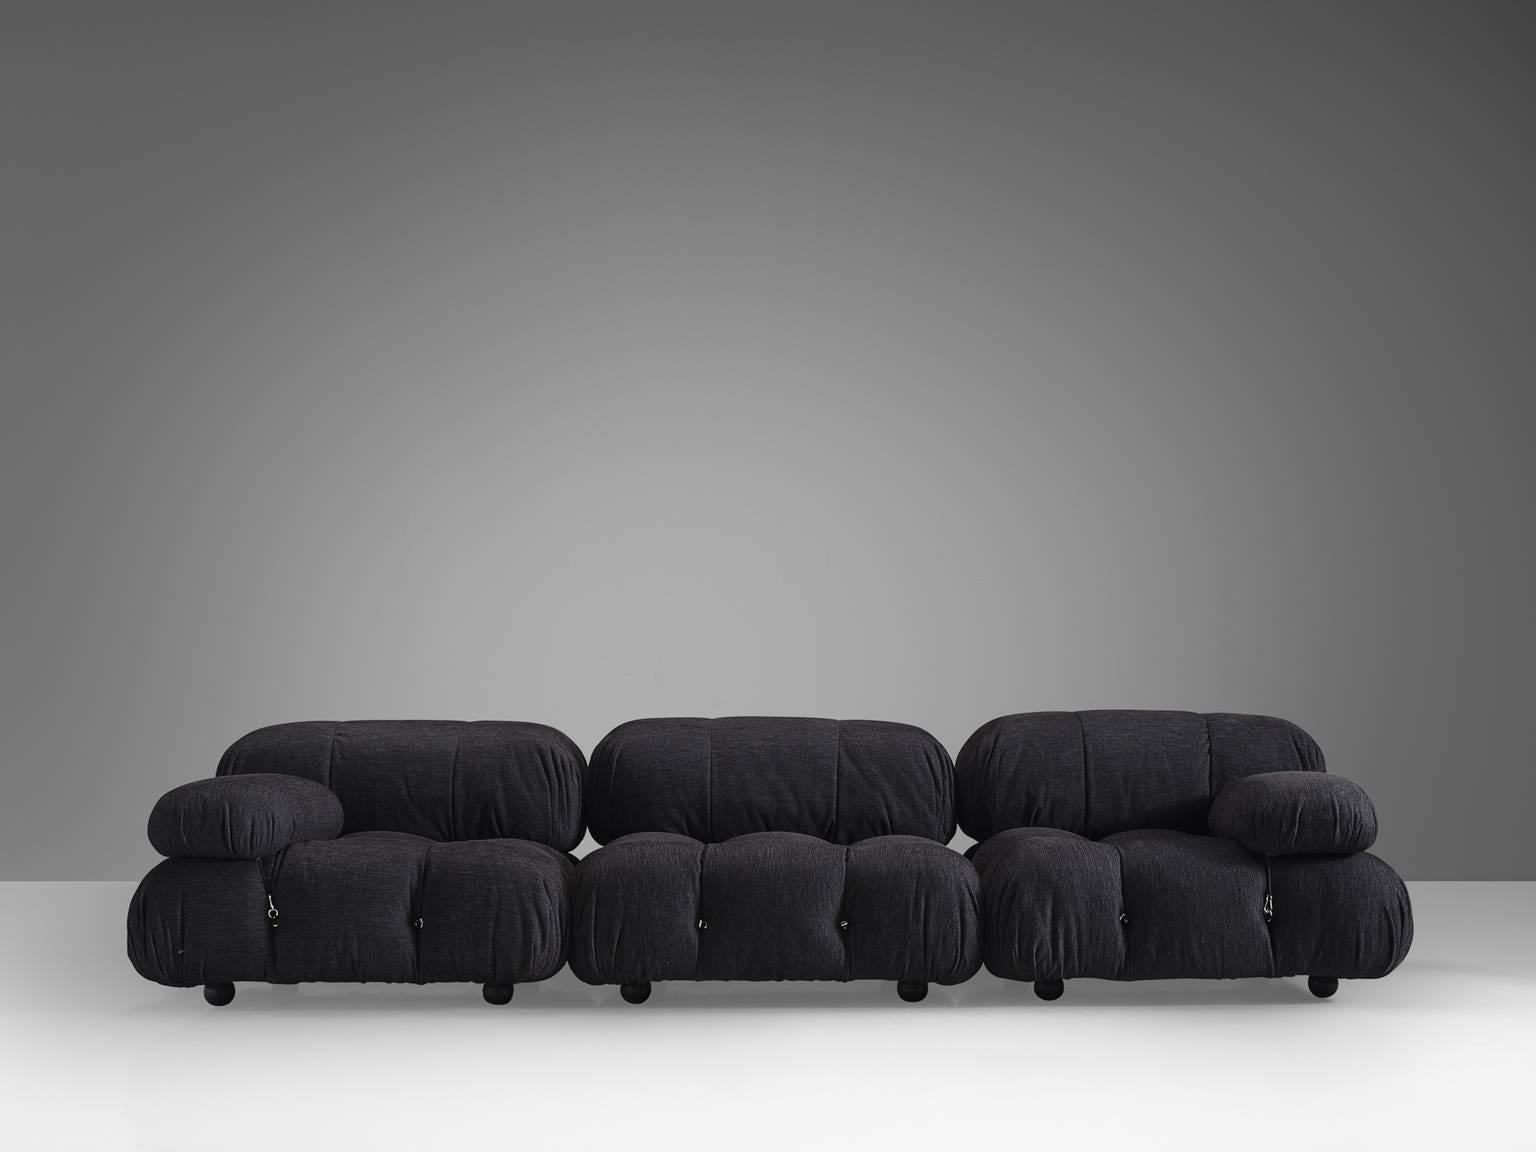 Post-Modern Listing for B: Mario Bellini 'Camaleonda' newly upholstered in grey velvet